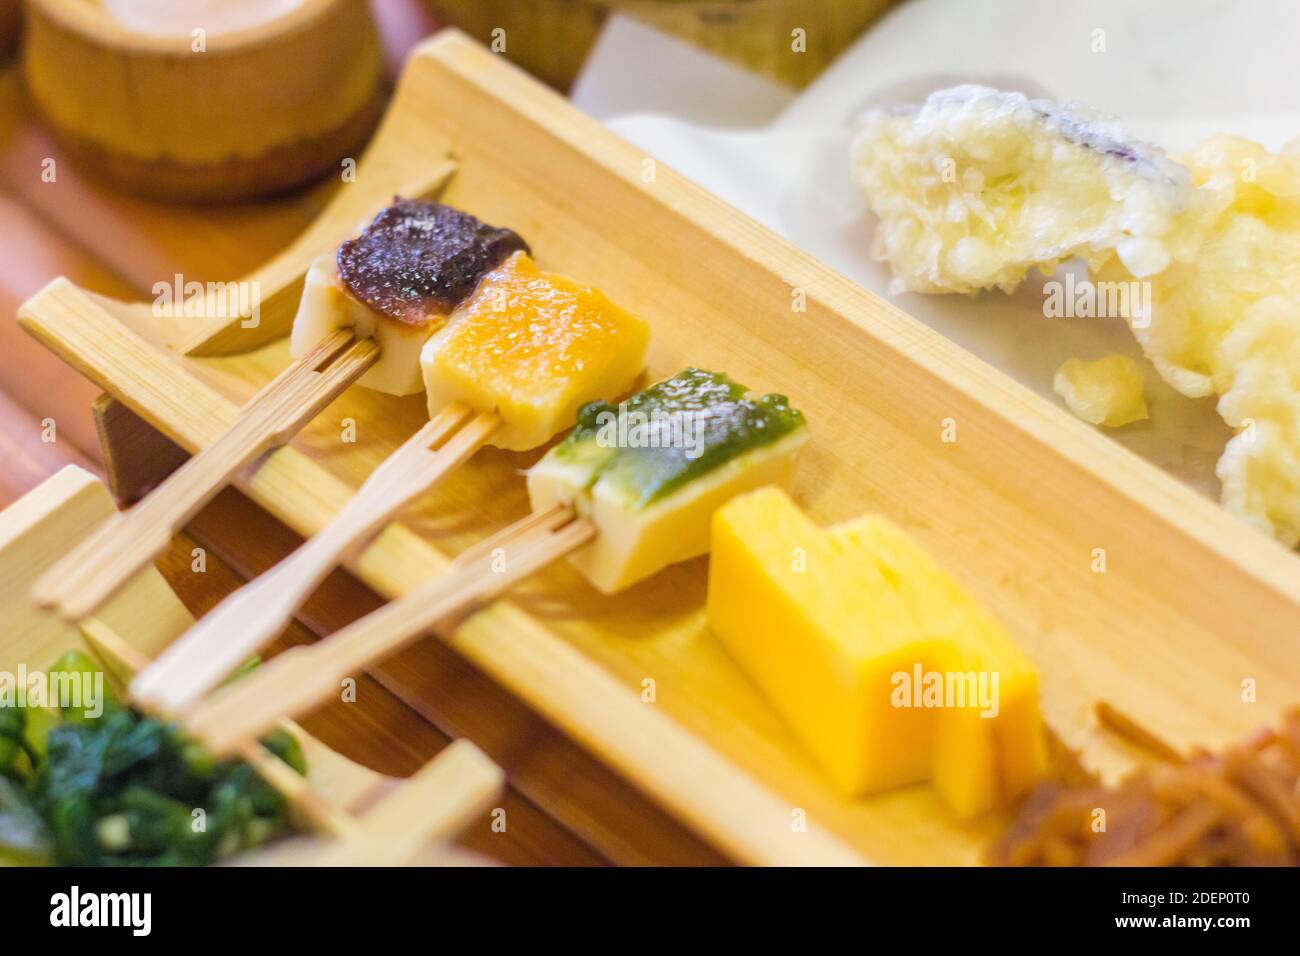 Cibo vegetariano a base di germogli di bambù in un ristorante giapponese del tempio buddista ad Aichi, in Giappone Foto Stock